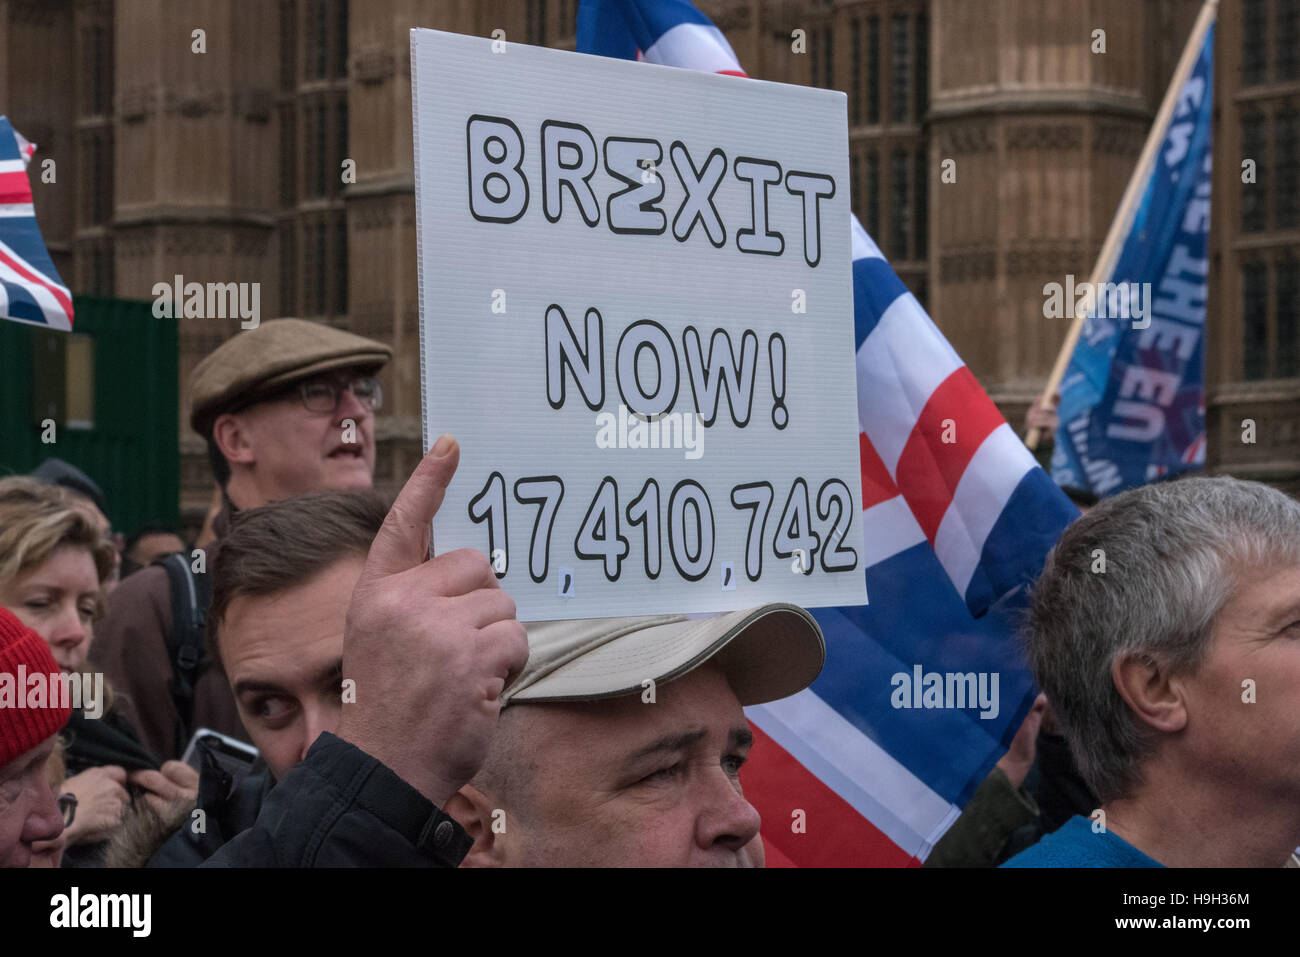 Londres, Royaume-Uni. 23 novembre, 2016. Brexit Pro rally à l'extérieur de la Chambre des communes Crédit : Ian Davidson/Alamy Live News Banque D'Images